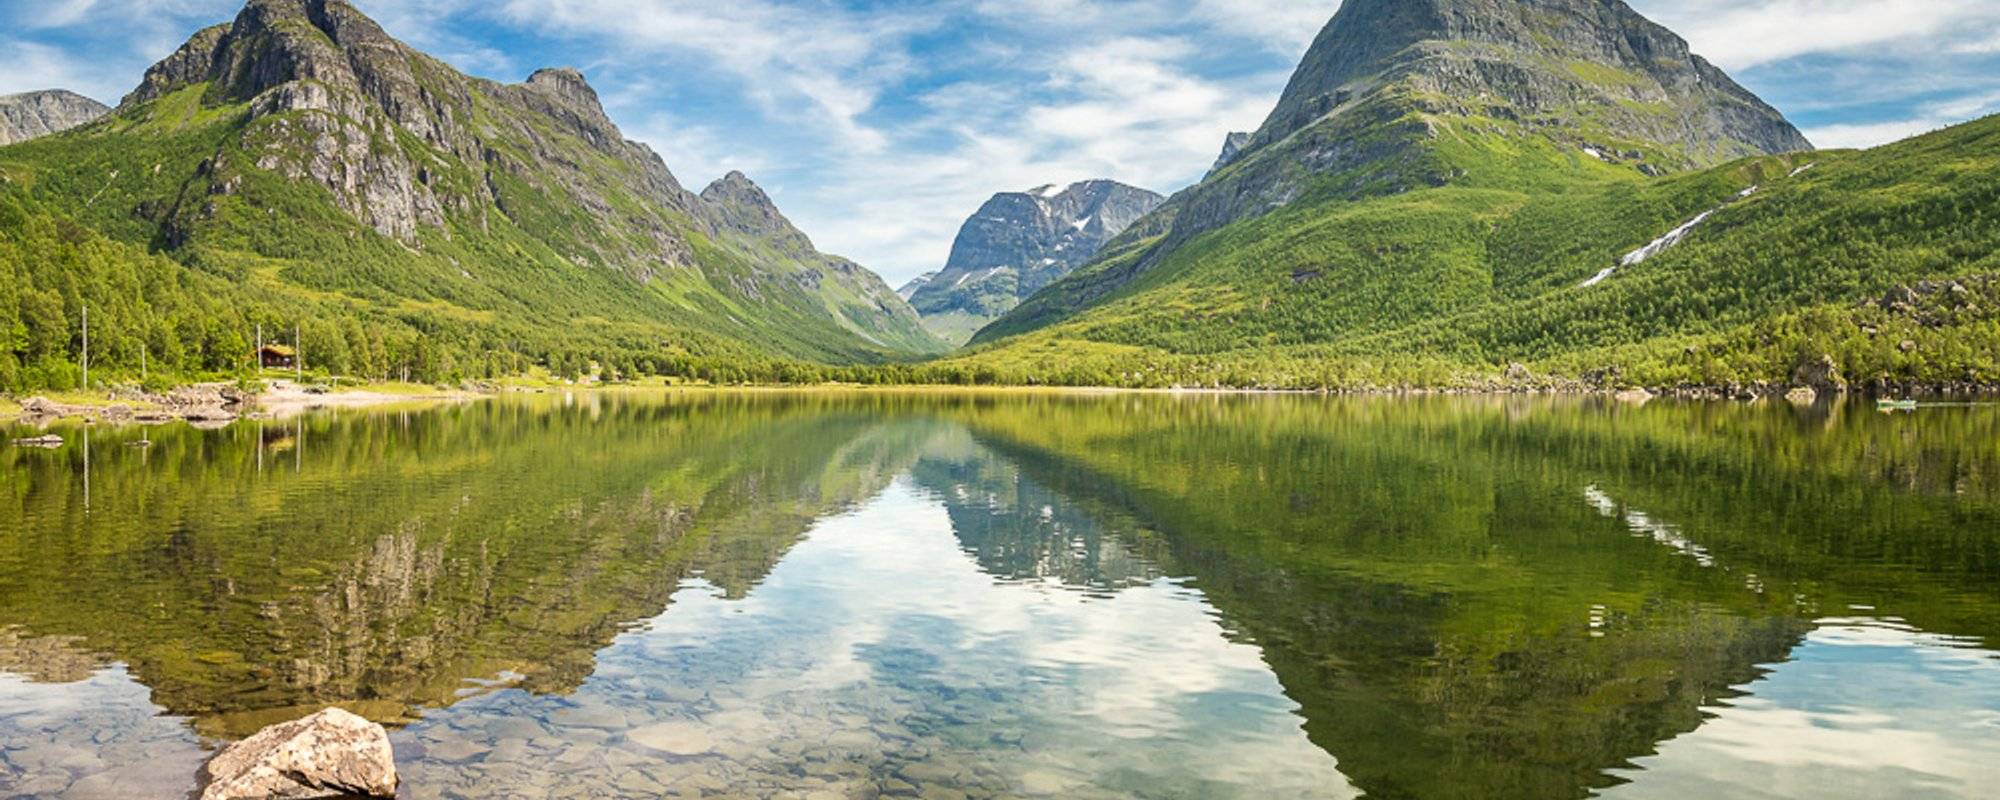 Norwegian landscapes: Innerdalen summertime 4 years ago...